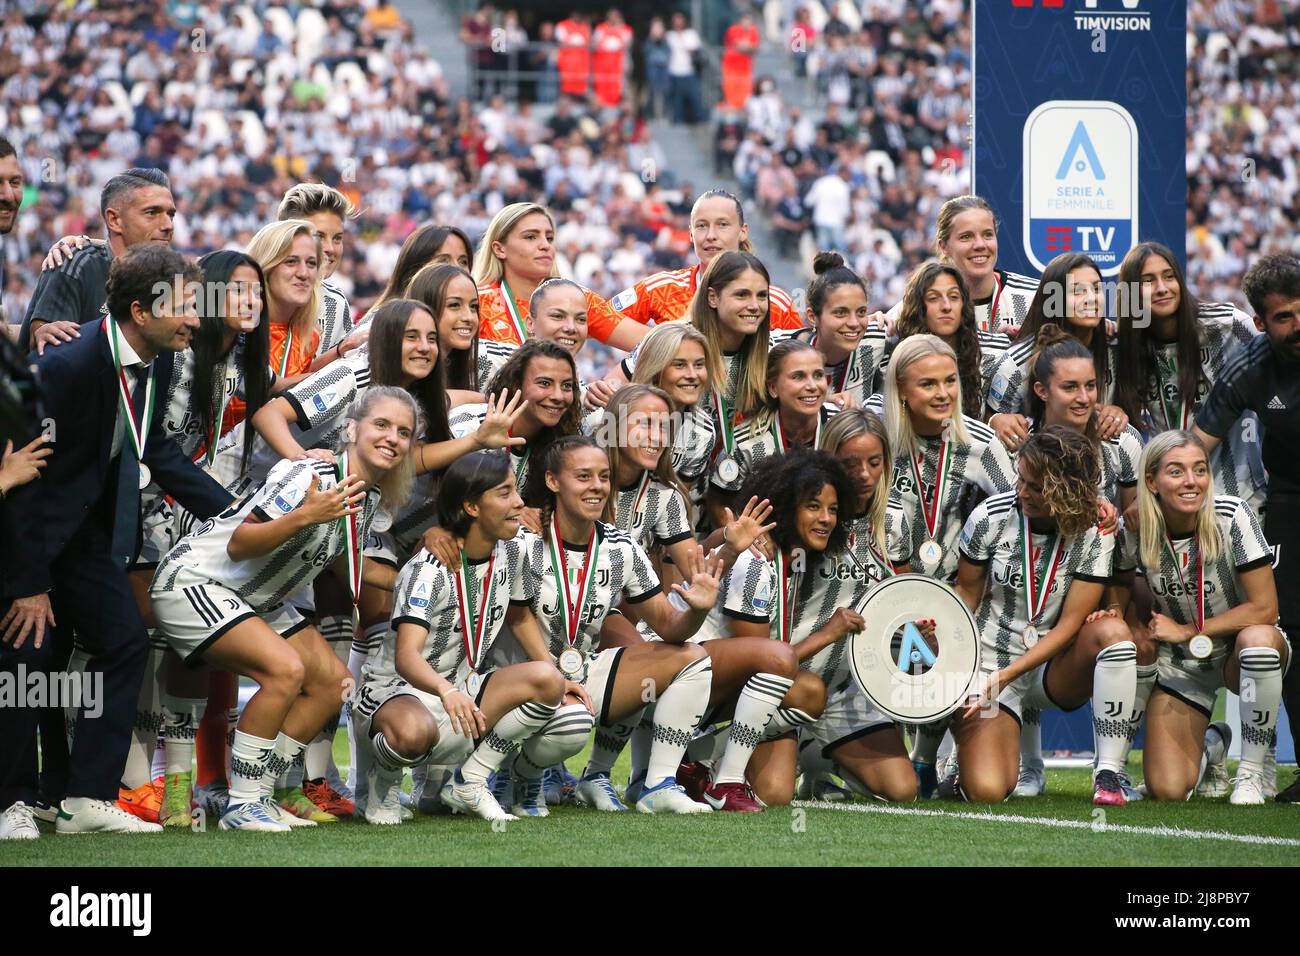 Torino, 16th maggio 2022. La squadra Juventus Women festeggia con il Women's Series A League Trophy prima di iniziare la partita nella Serie A allo stadio Allianz di Torino. Il credito d'immagine dovrebbe essere: Jonathan Moscrop / Sportimage Foto Stock